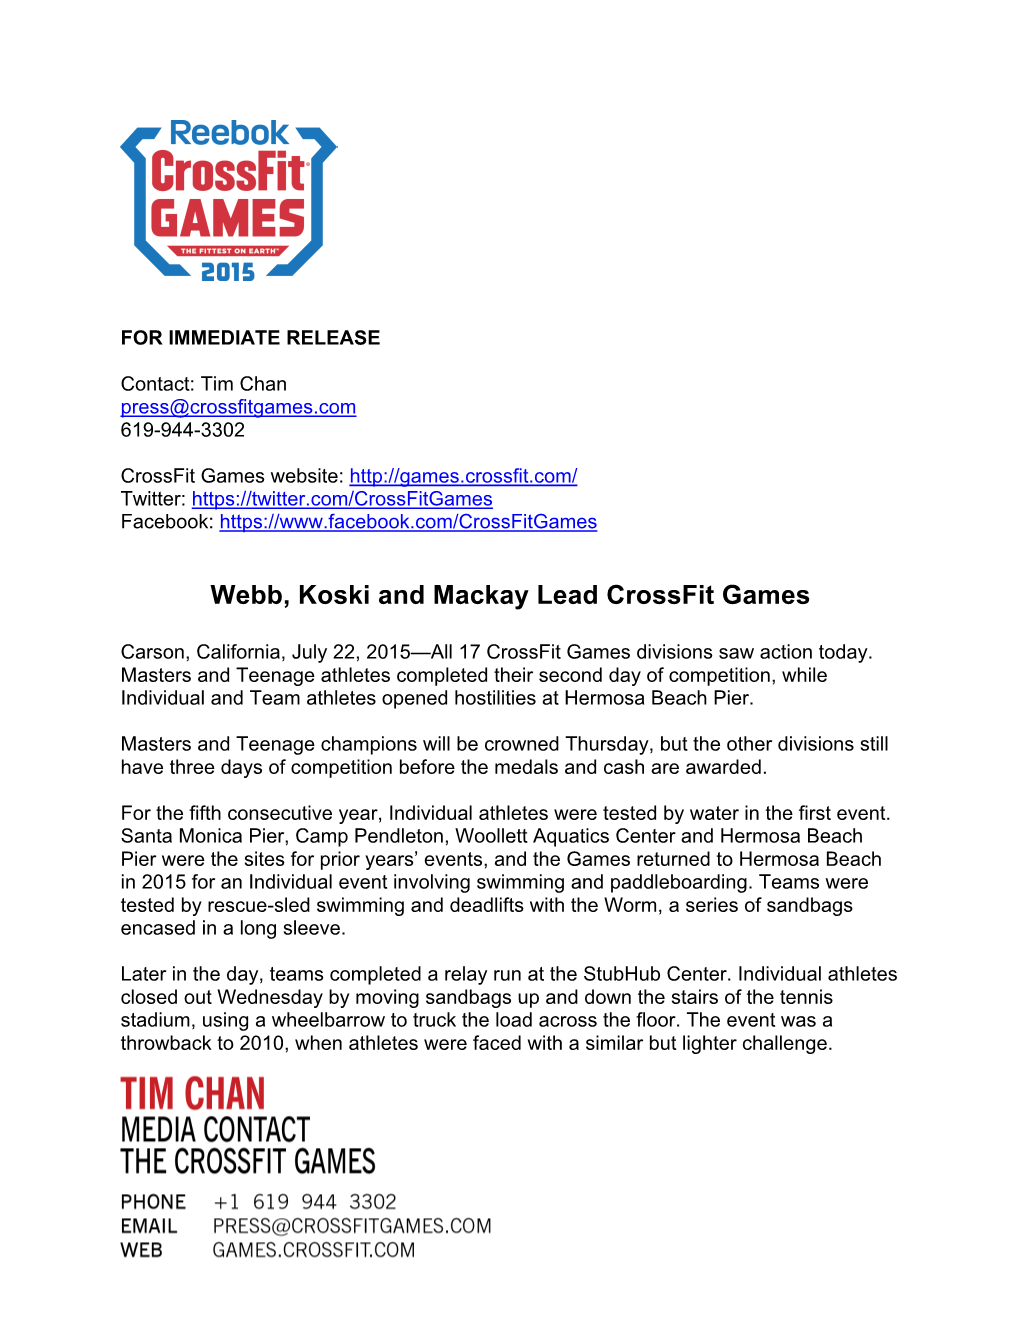 Webb, Koski and Mackay Lead Crossfit Games